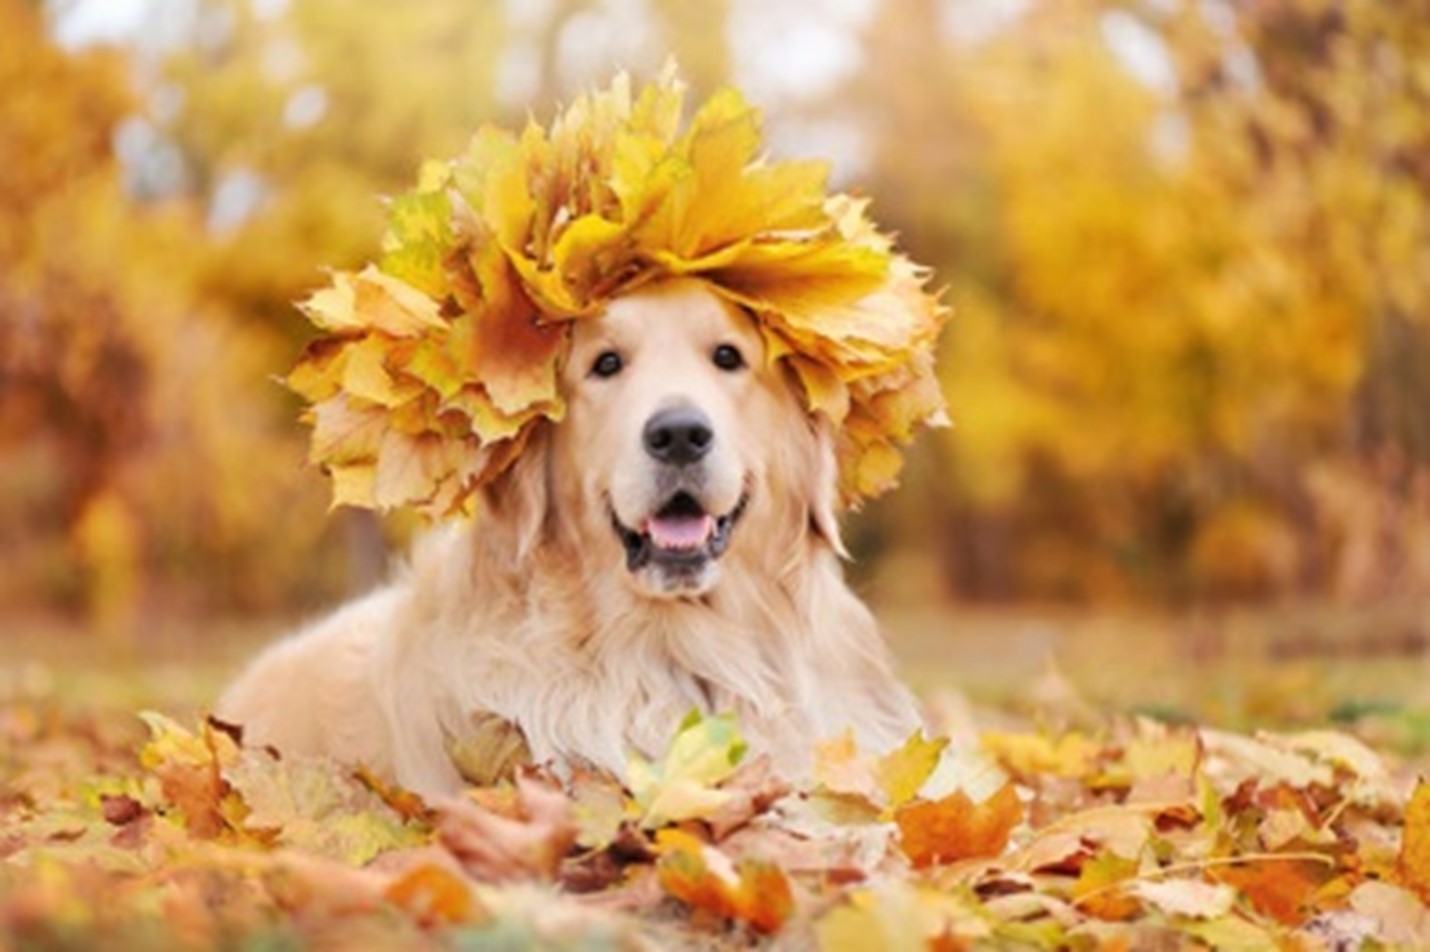 Dog in a leaf crown